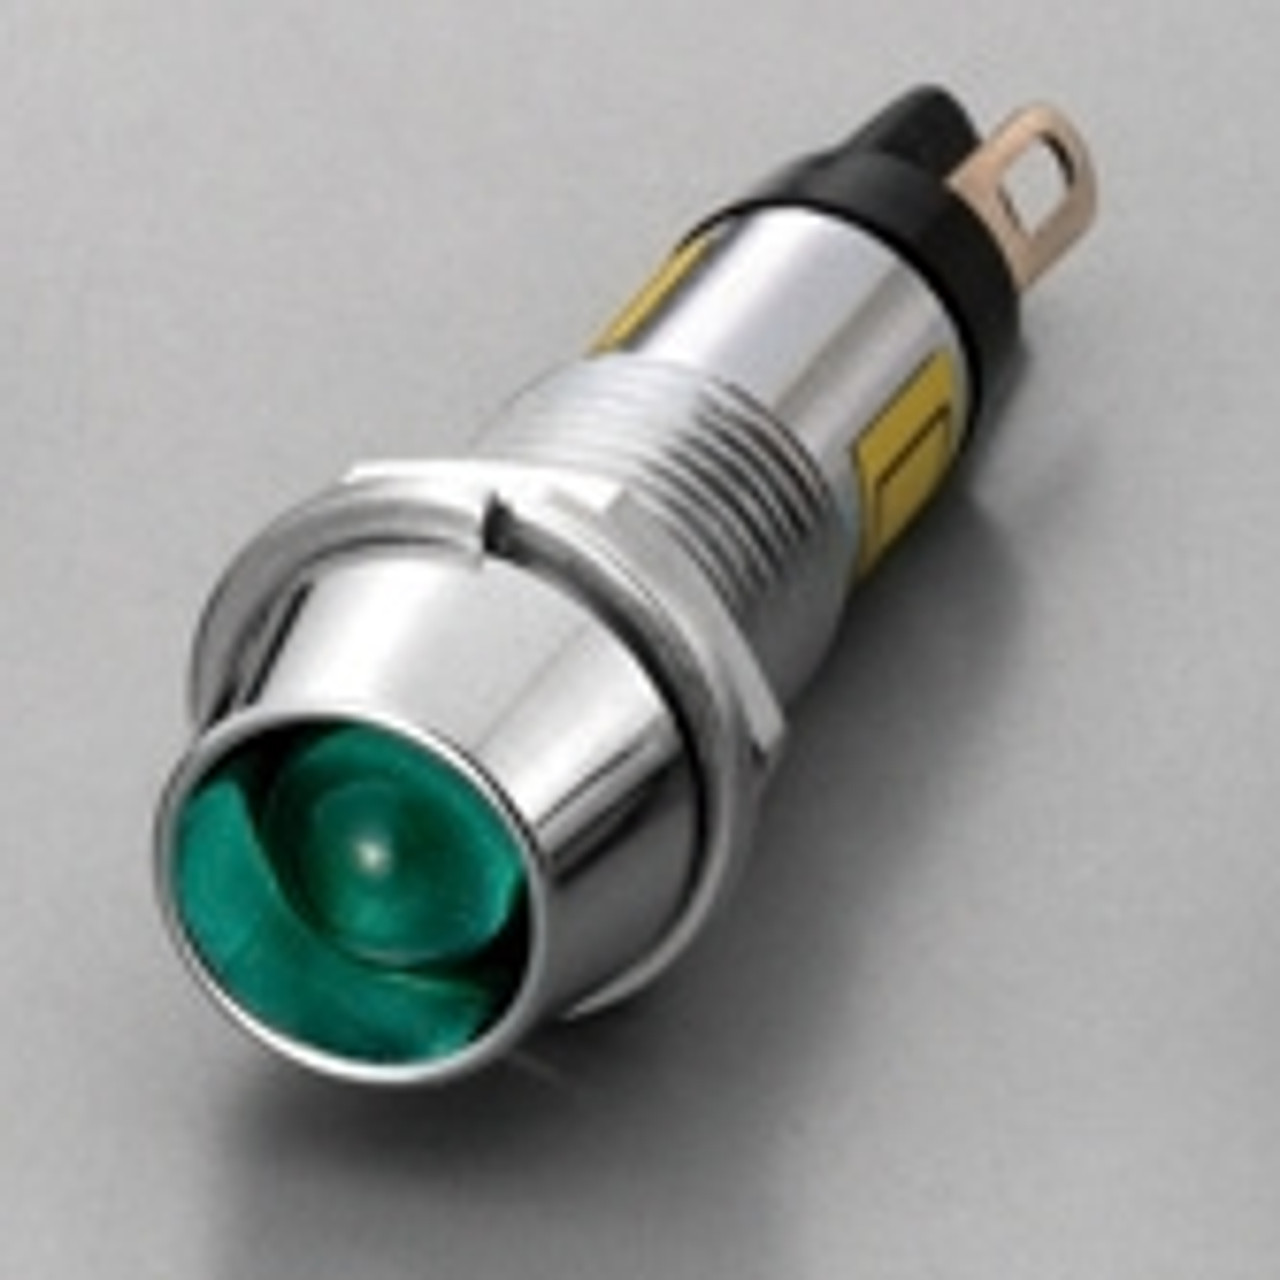 Repair Indicator Lamp, Green, DC12V